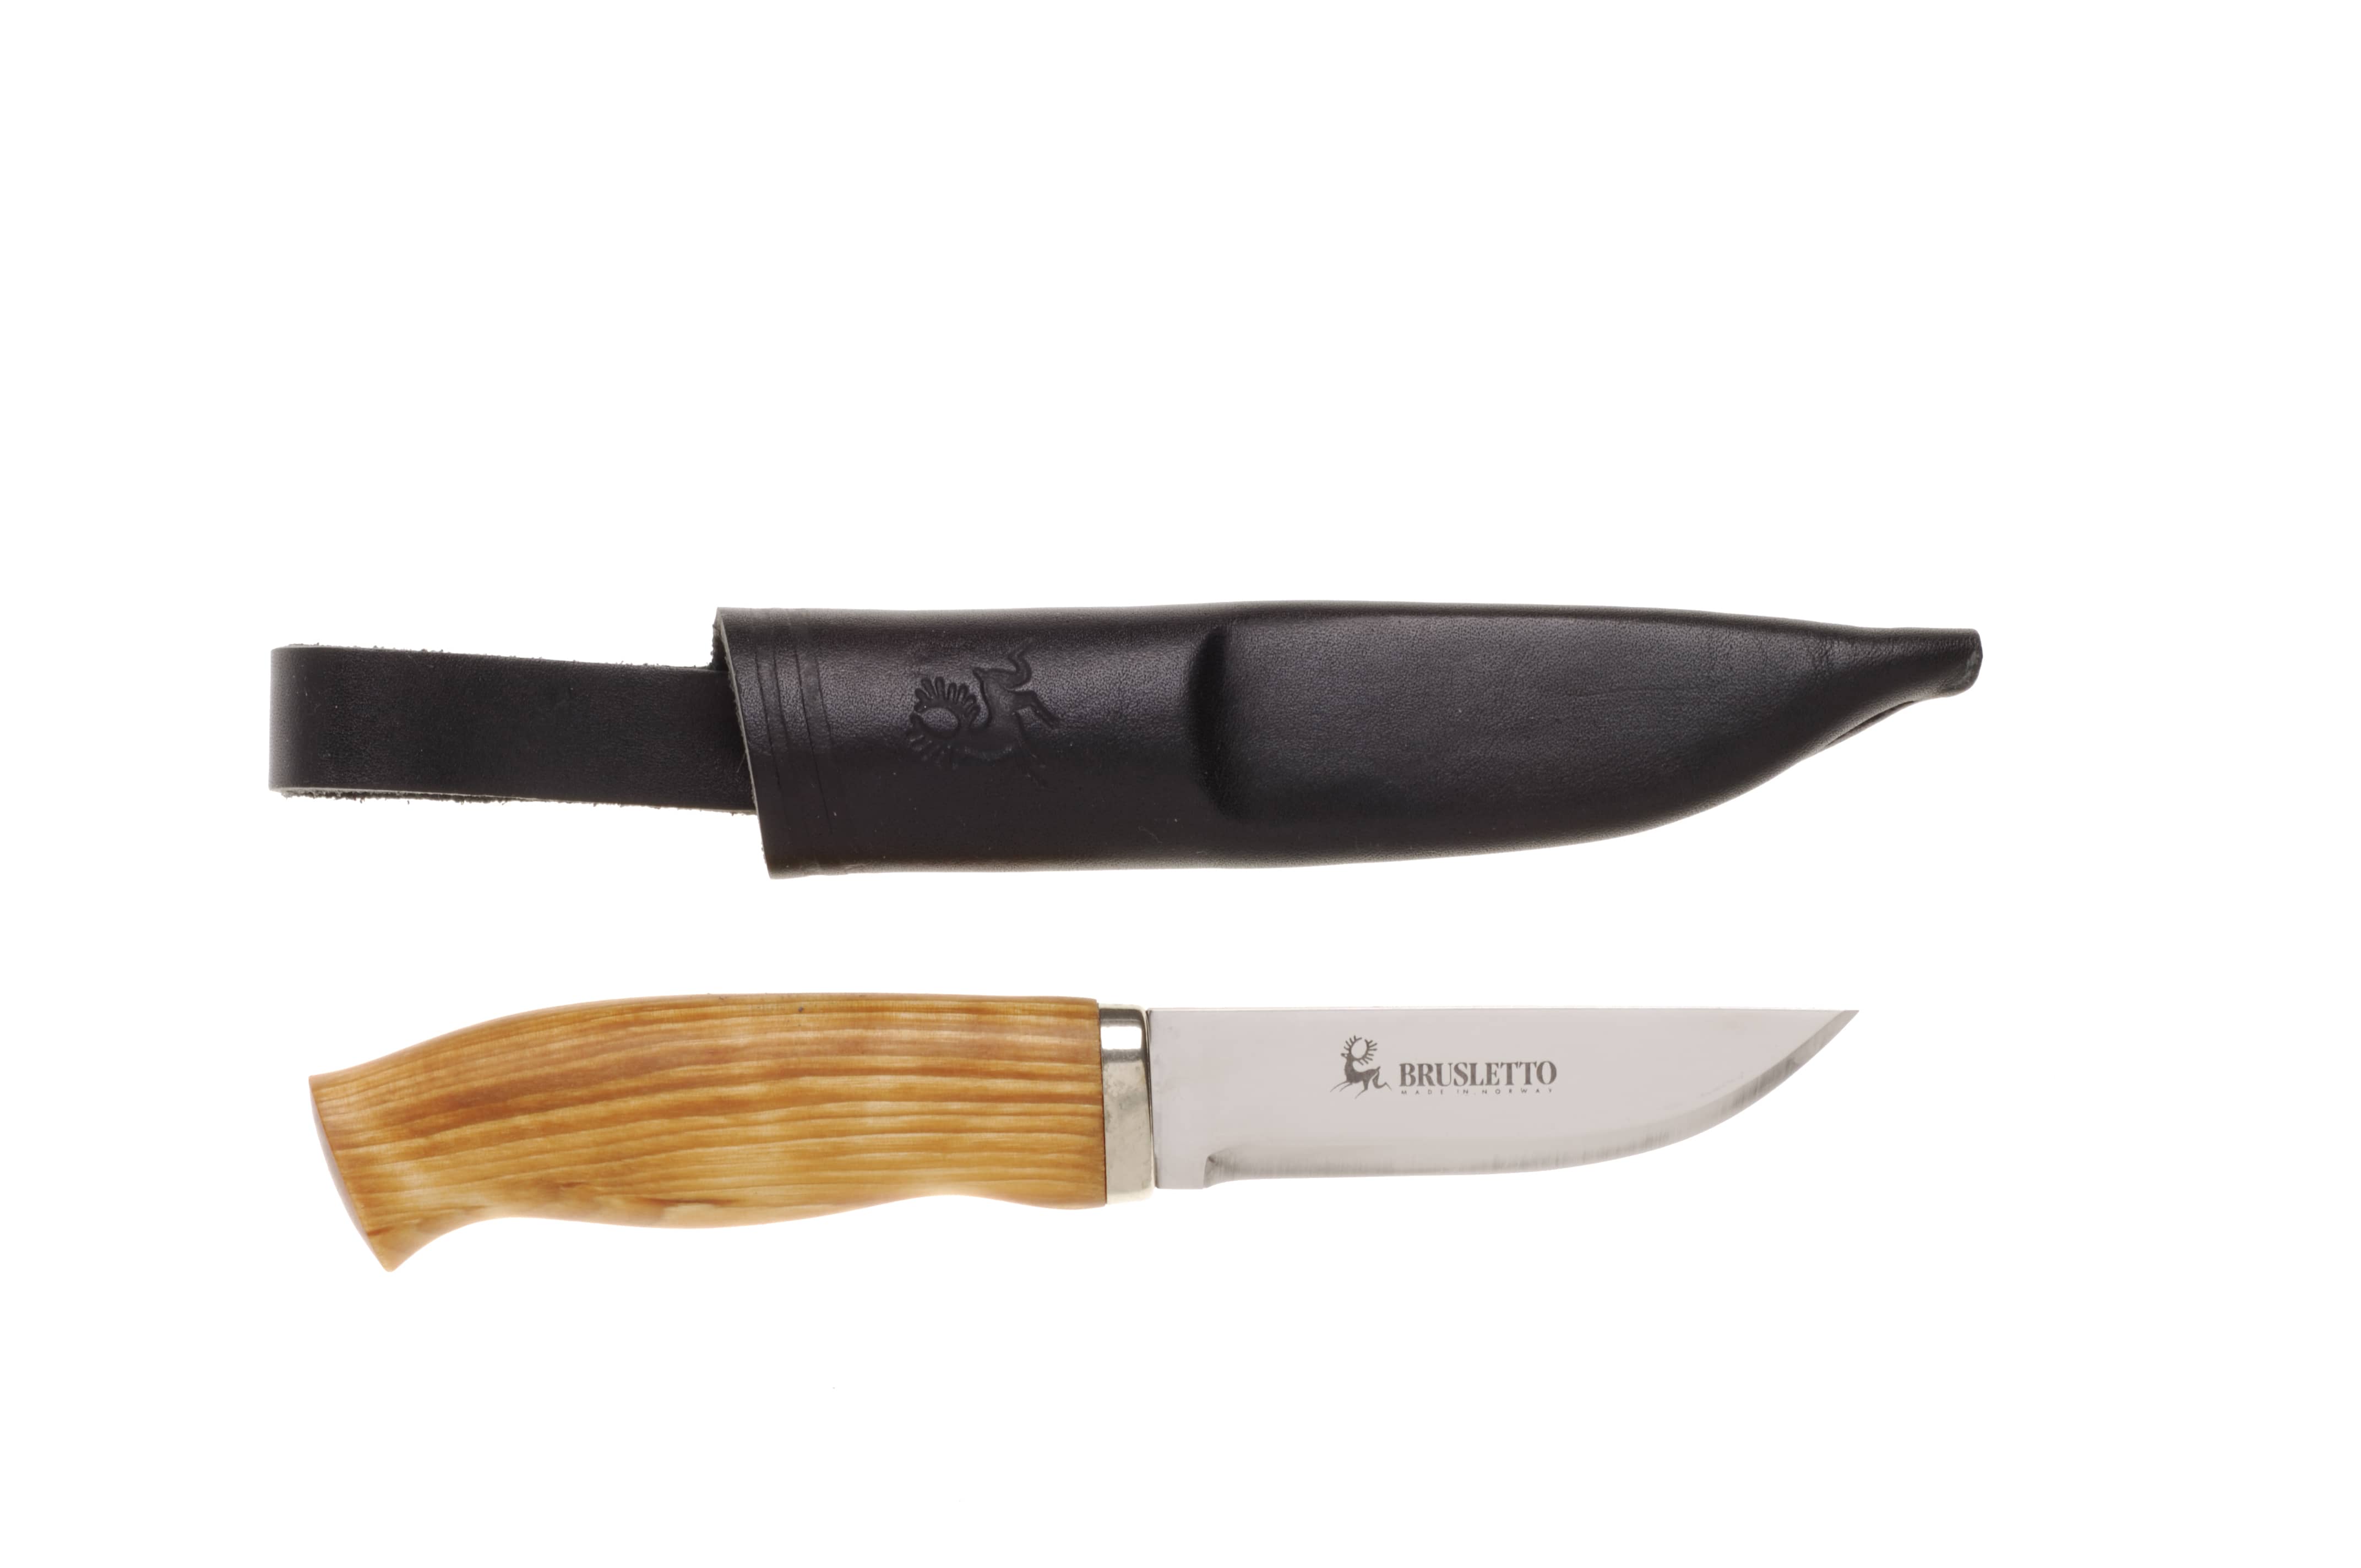 Bruslettokniven från Brusletto jaktkniv